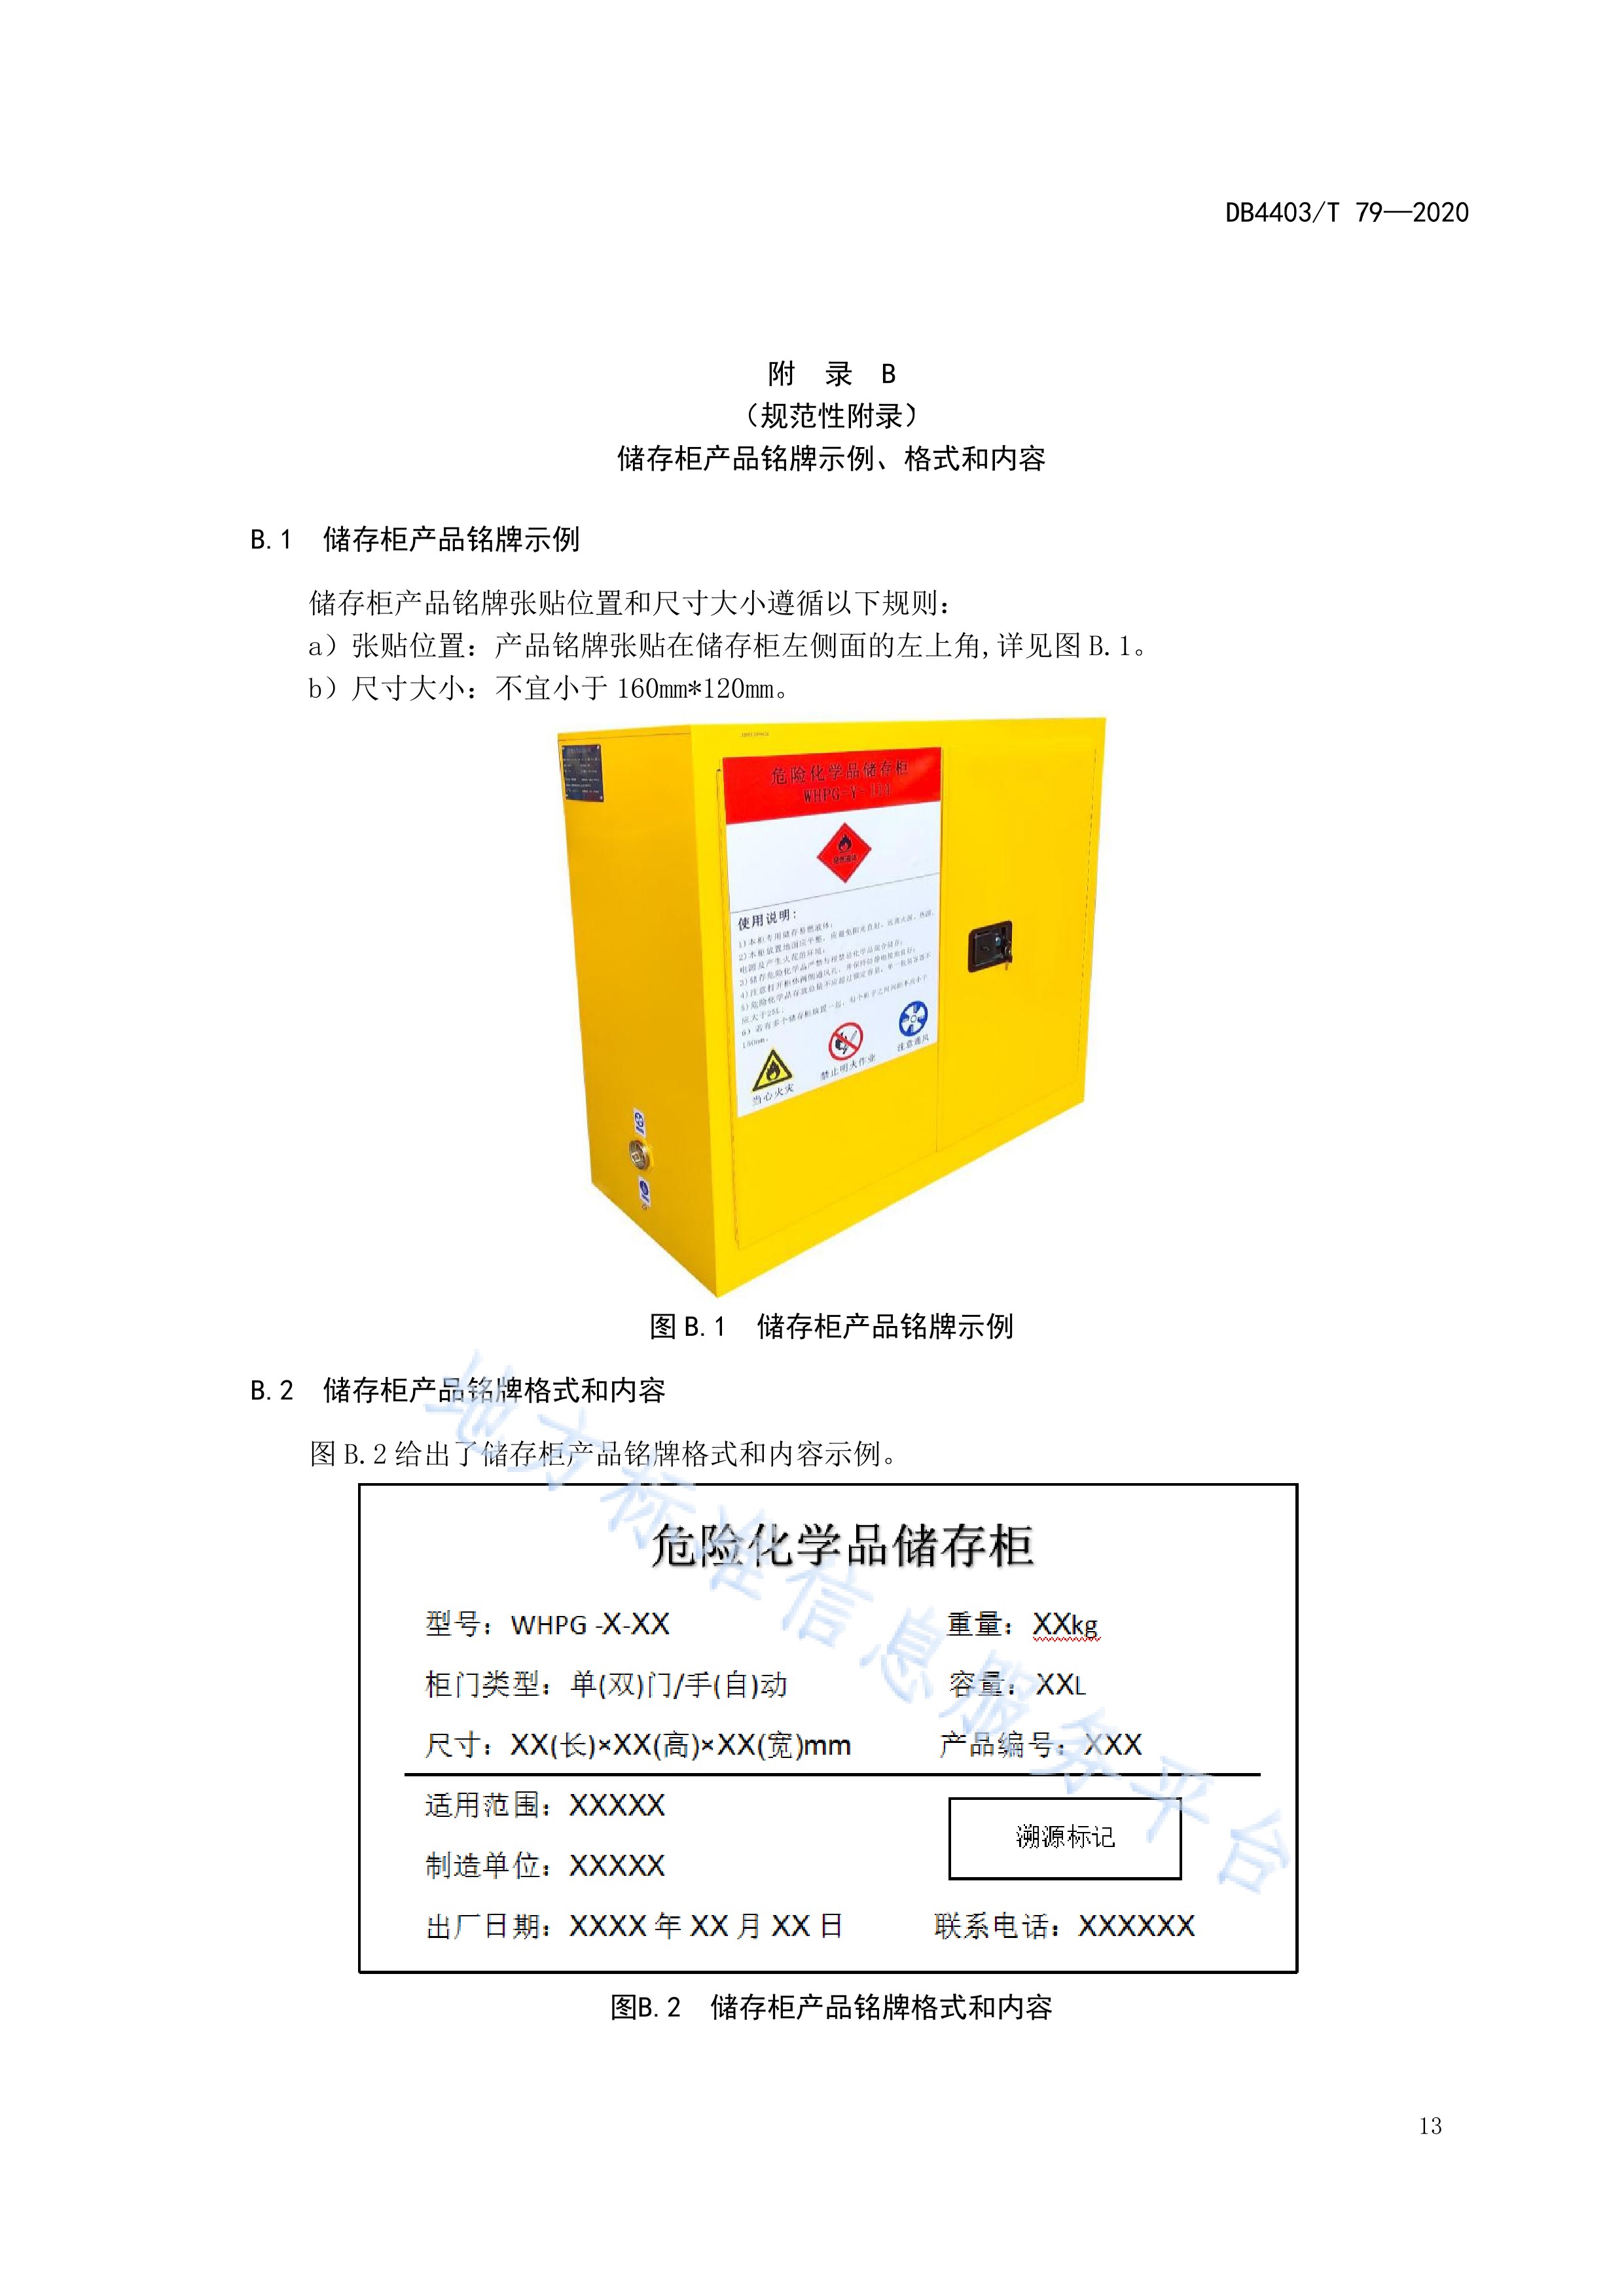 阻燃材料储存箱标准规范